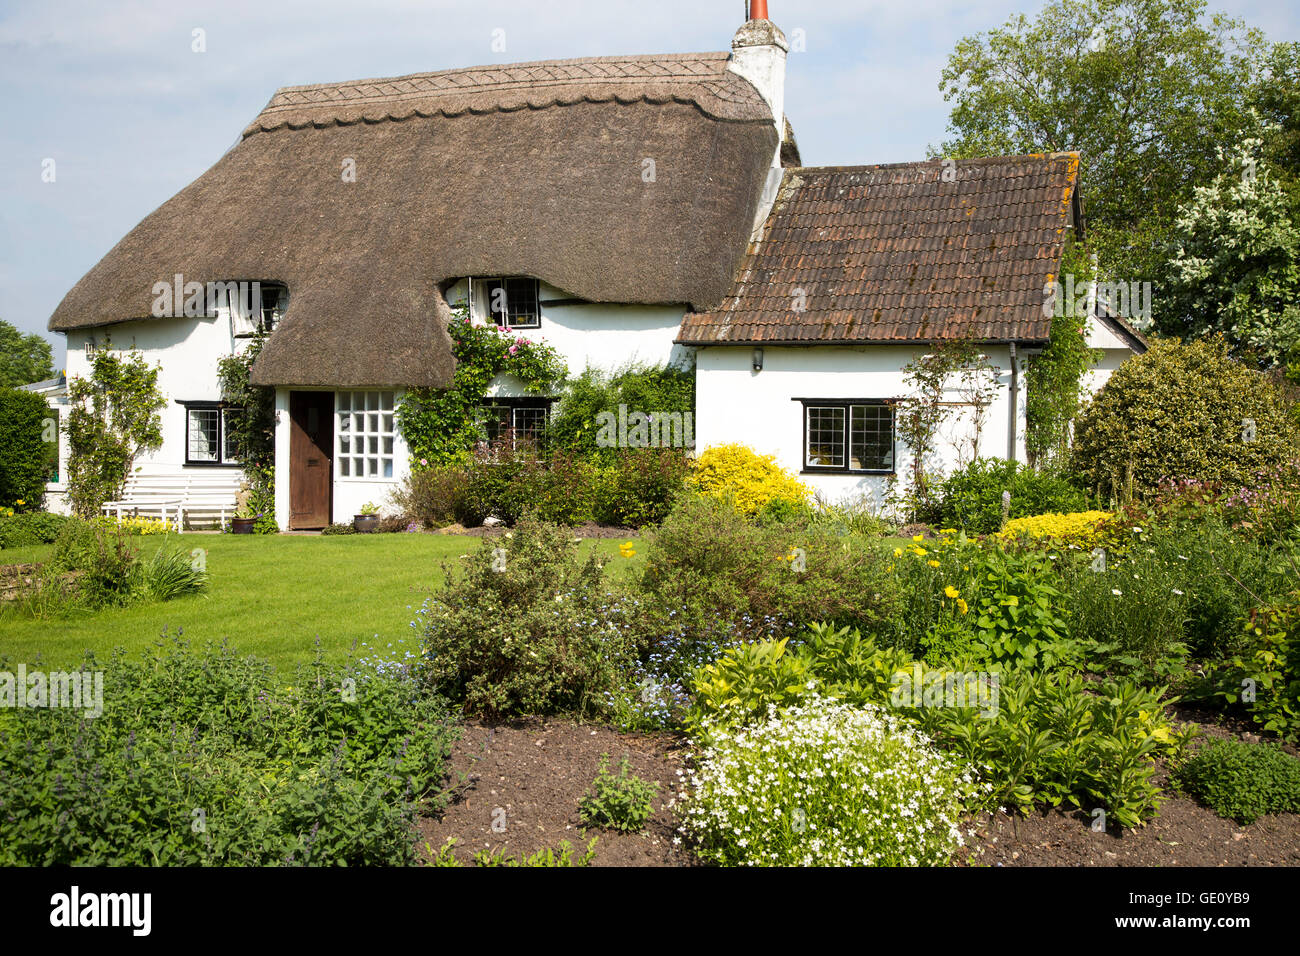 Jolie chaumière historique et jardin, Vega, Wiltshire, England, UK Banque D'Images